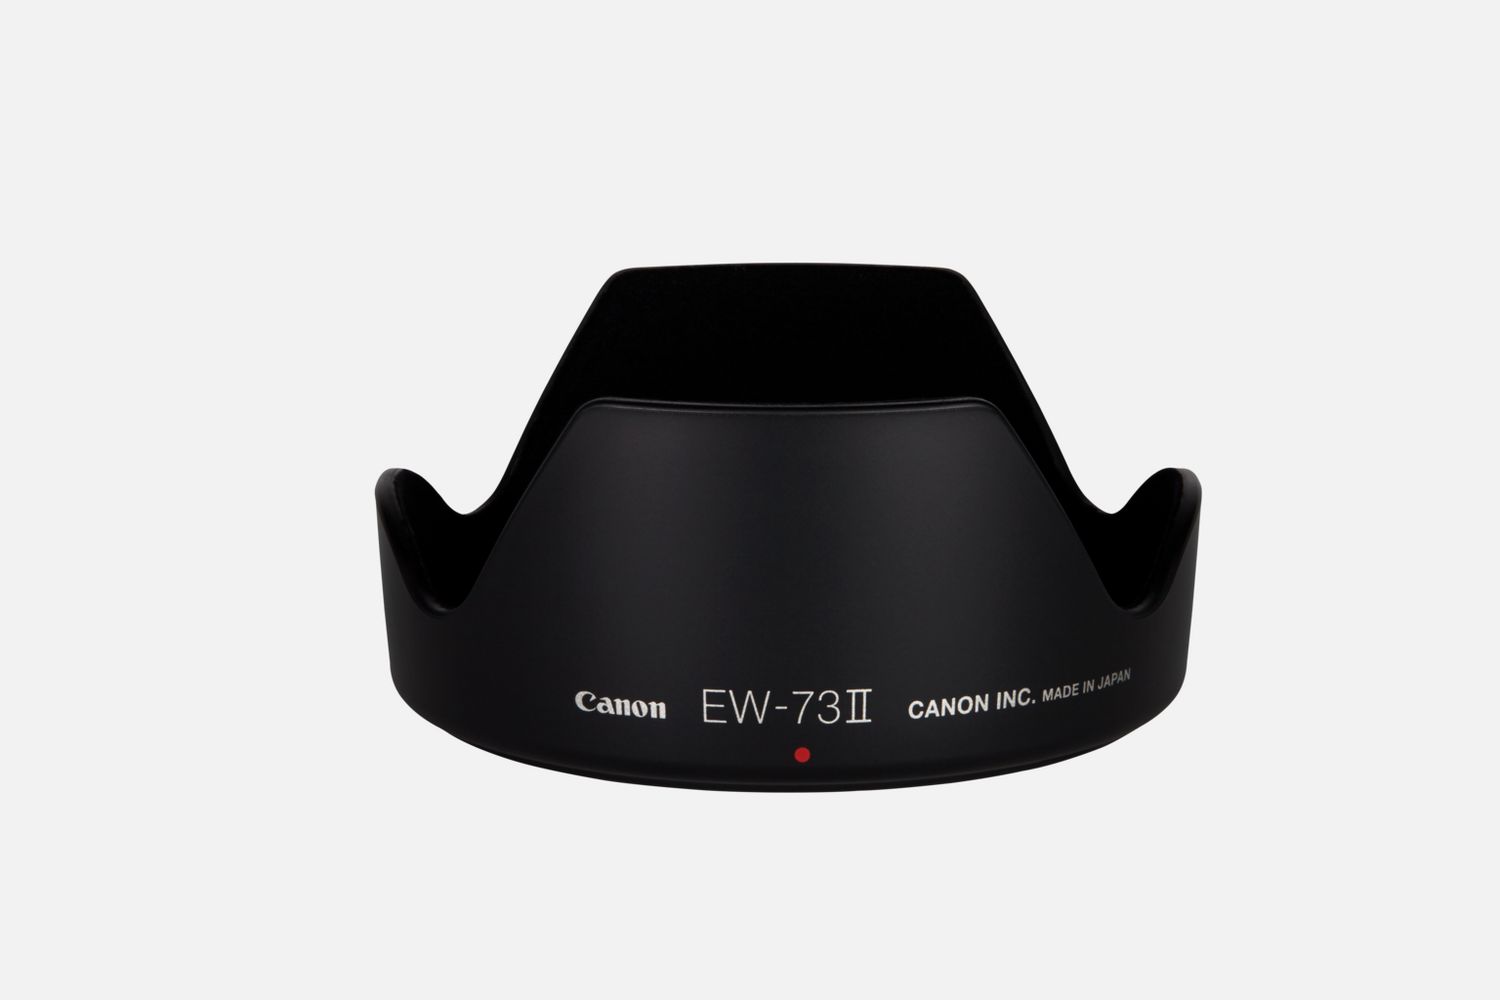 Passt auf das Objektiv EF 24-85mm 1:3,5-4,5, reduziert Reflexionen, die durch direkt auf die Frontlinse auffallendes Licht hervorgerufen werden.